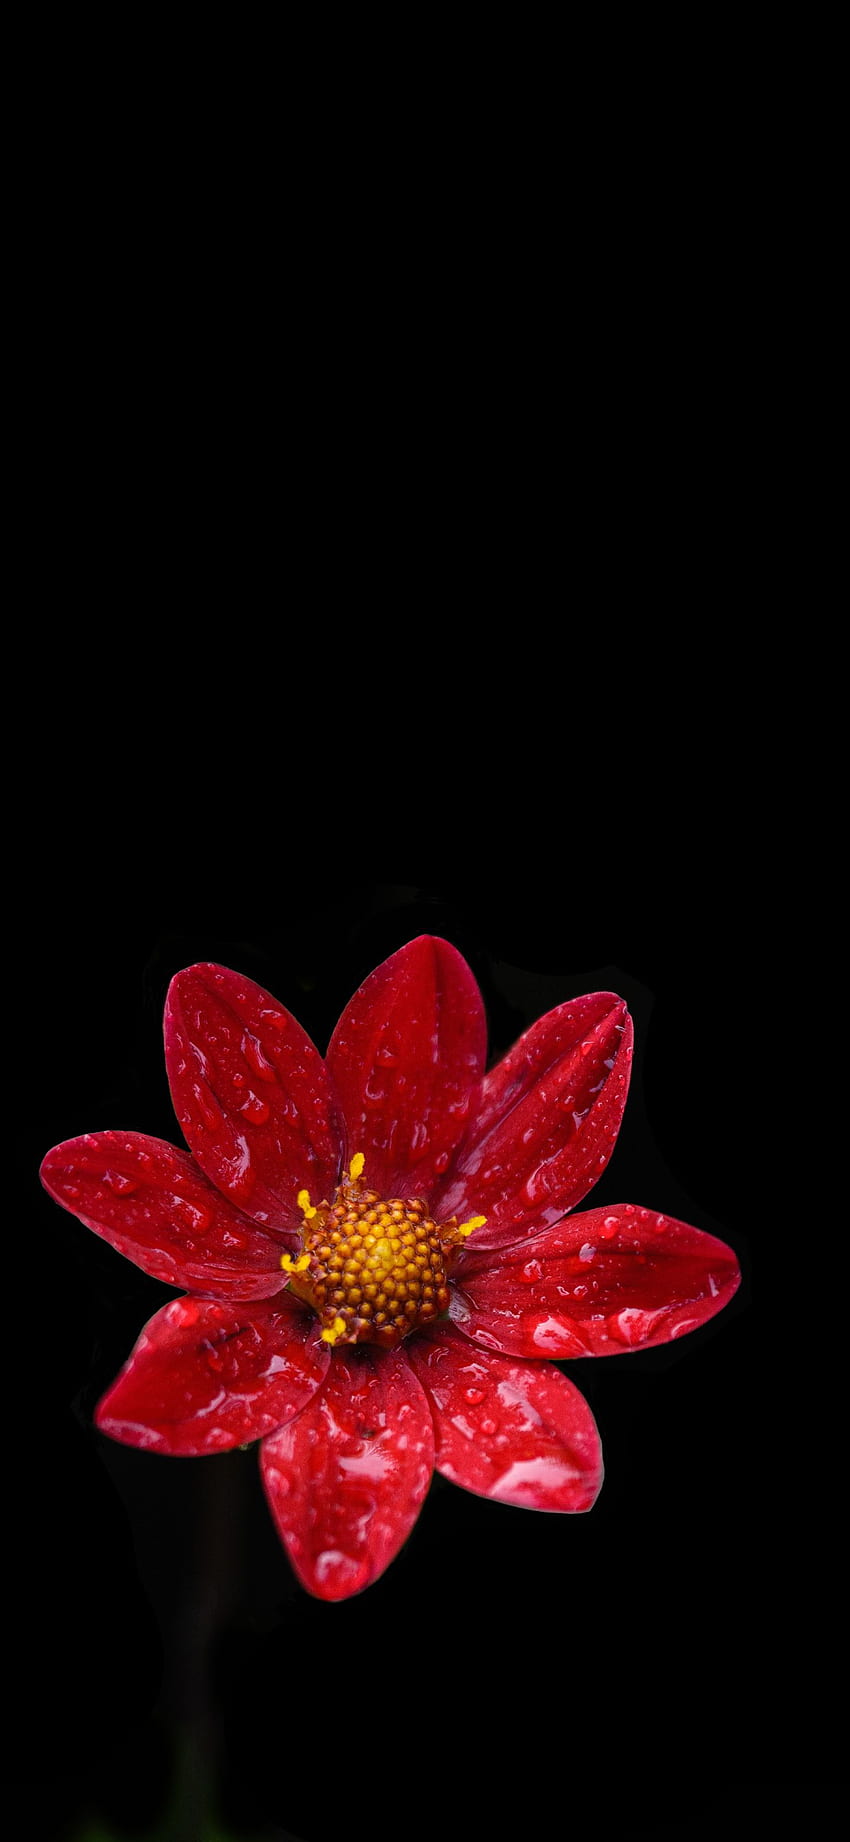 Bunga AMOLED - , Latar Belakang Bunga AMOLED pada Kelelawar, AMOLED Merah wallpaper ponsel HD